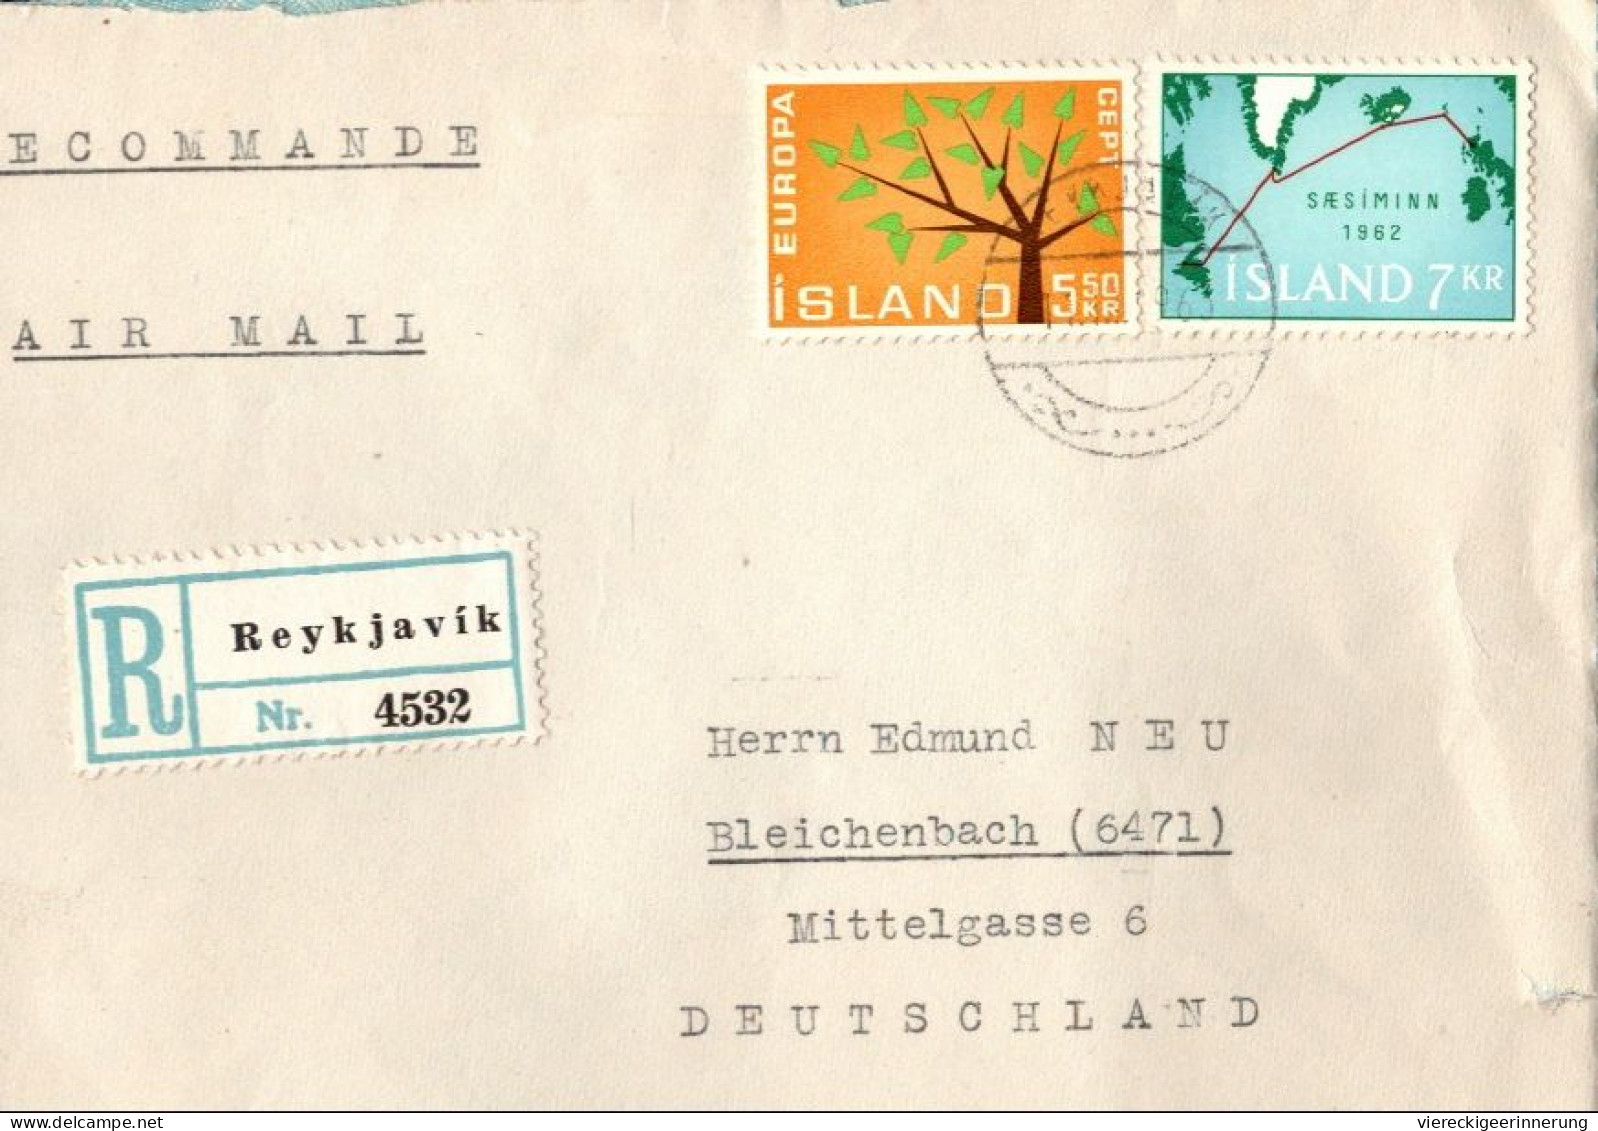 ! 2 Briefe + 29 R-Zettel aus Island, iceland, Reykjavik, Einschreibzettel, Reco Label